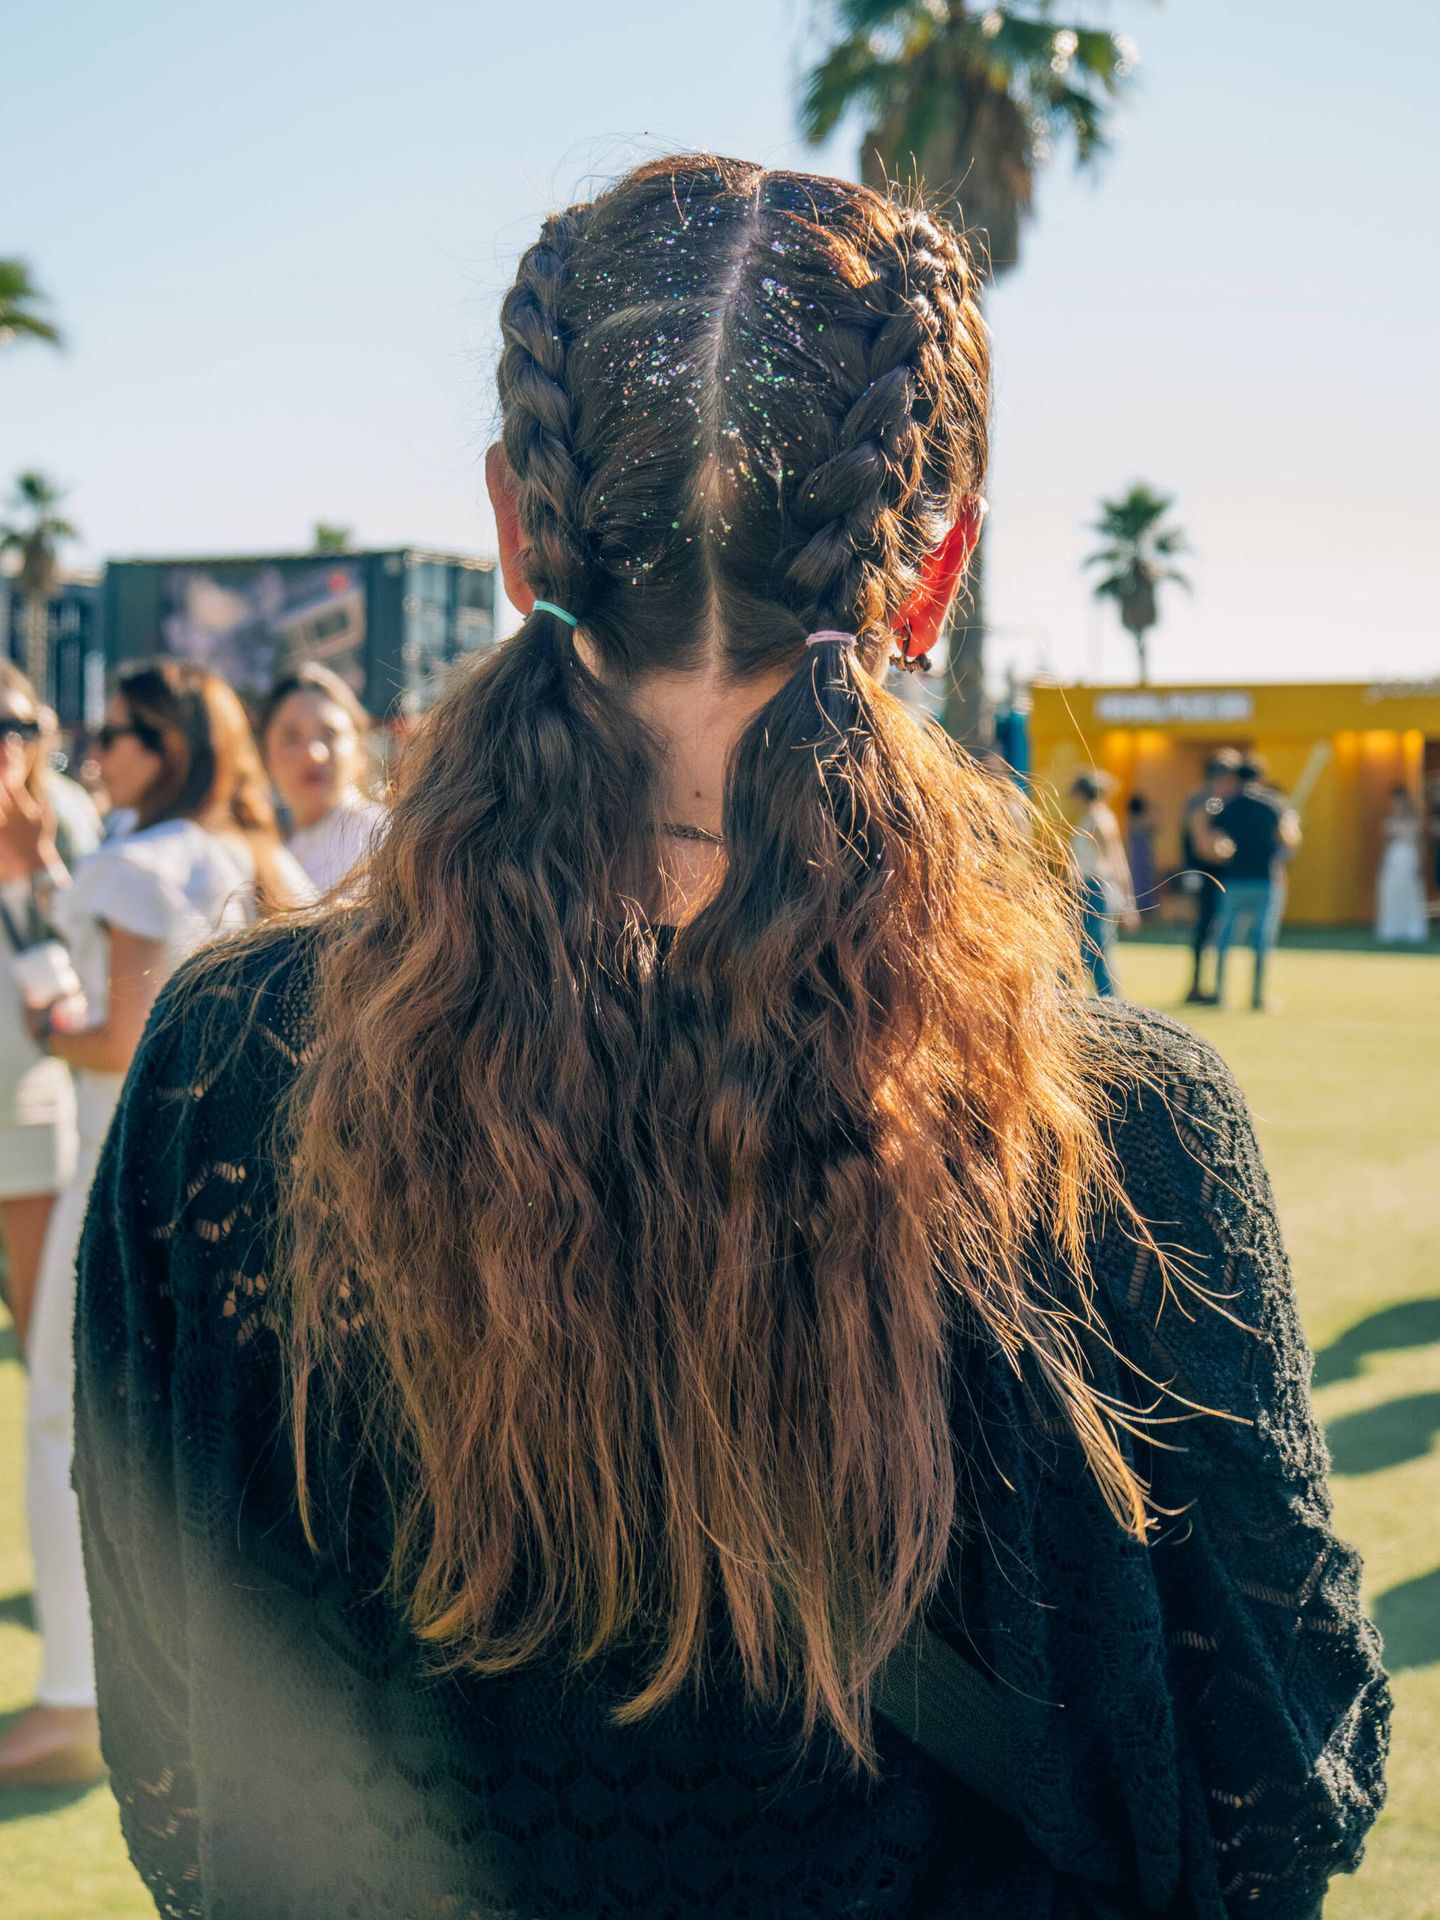 Al texturizar todo el cabello se gana volumen, algo de lo que se ven beneficiados los peinados de festival como las semi boxer braids. (Cortesía Ghd)